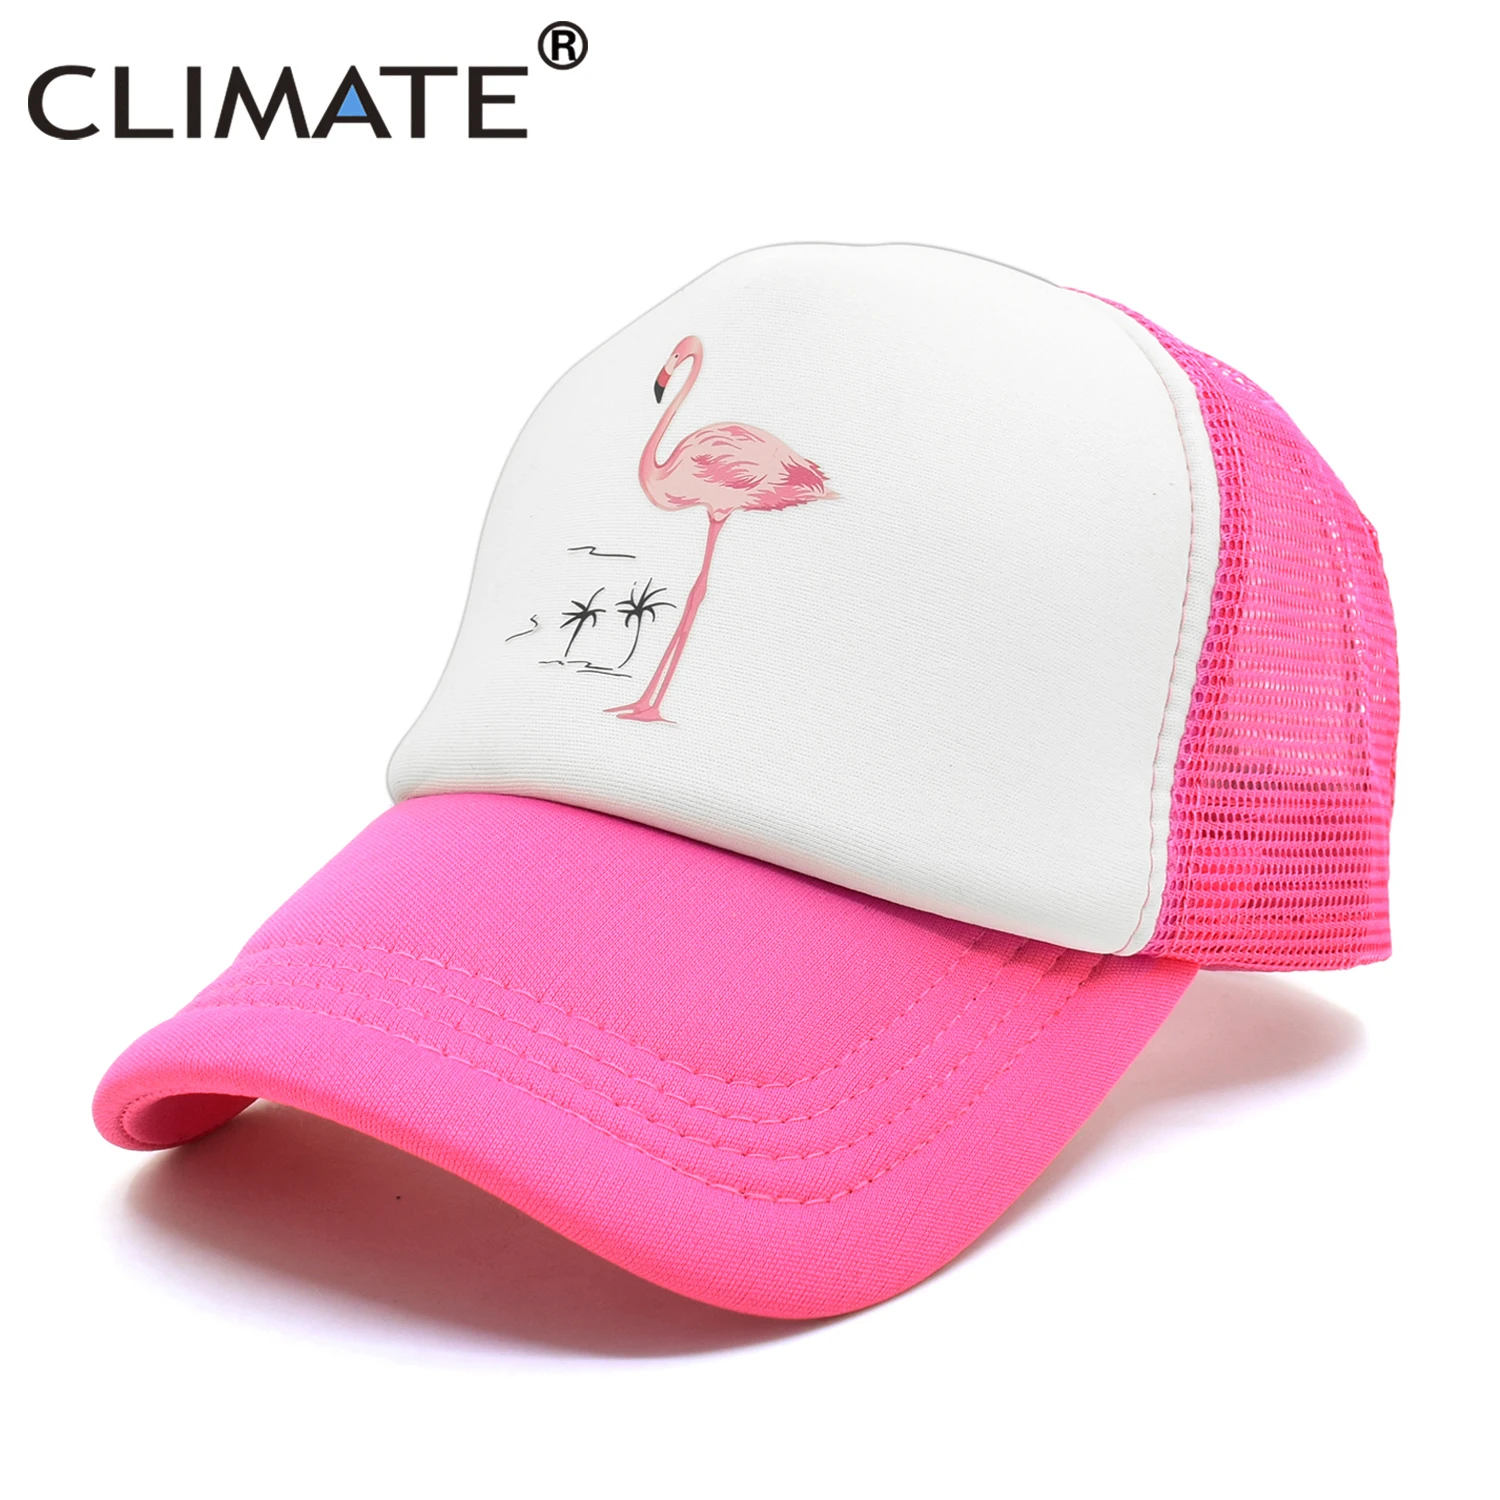 Климат Фламинго Кепка девушки женщины шляпа розовая роза Кепка Милая летняя кепка s шляпа хип-хоп сетчатая бейсболка s шляпа для женщин